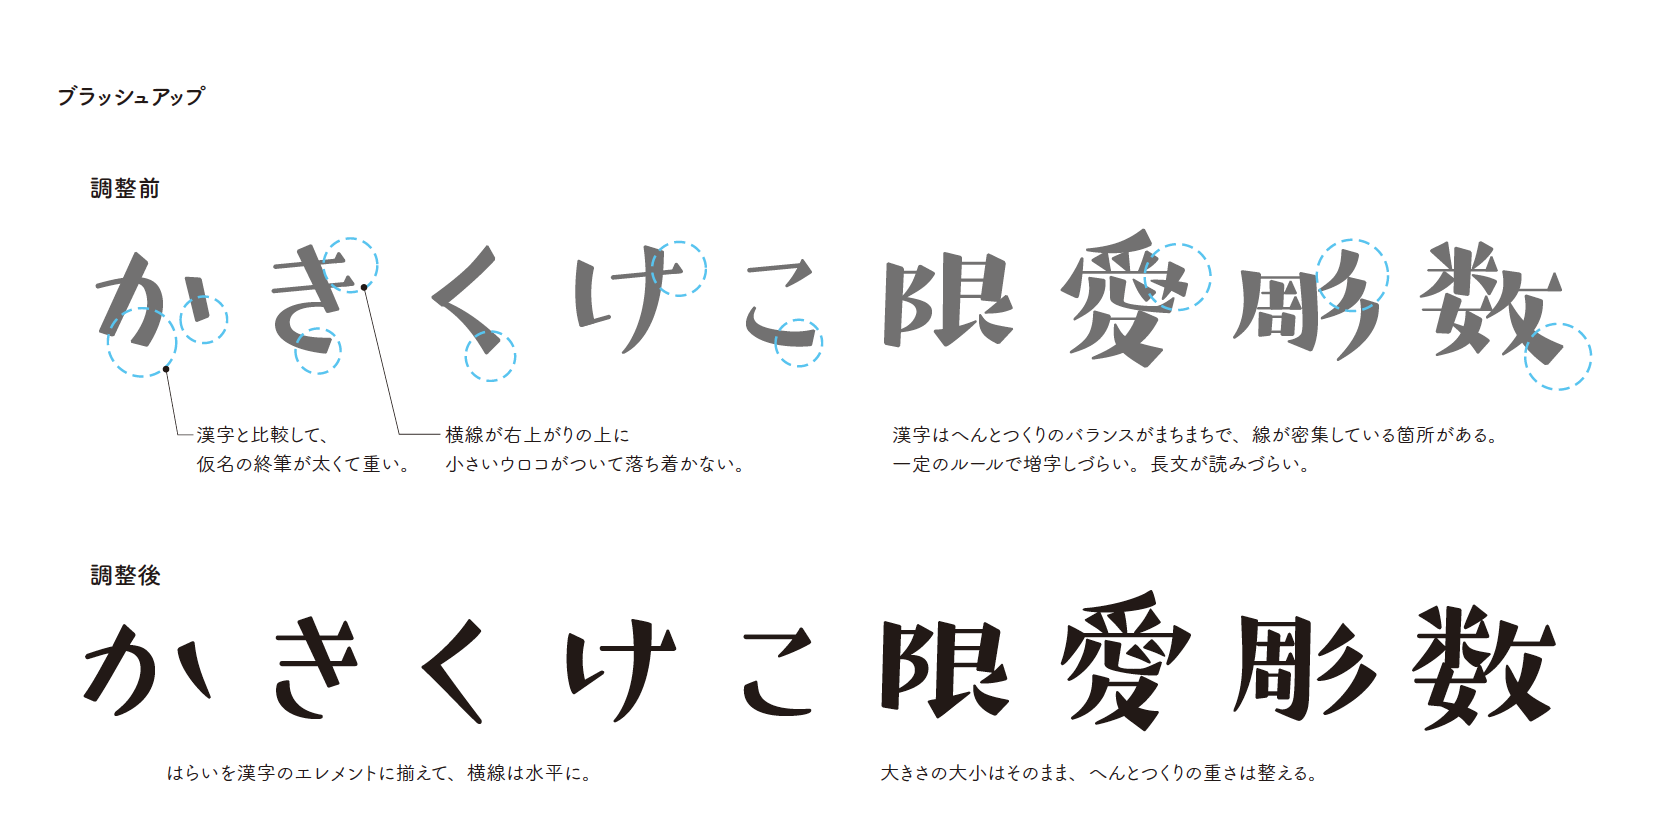 フォントデザイナー企画 昭和レトロな懐かしさにこだわった つばめ 神田友美氏へのインタビュー Fontworks